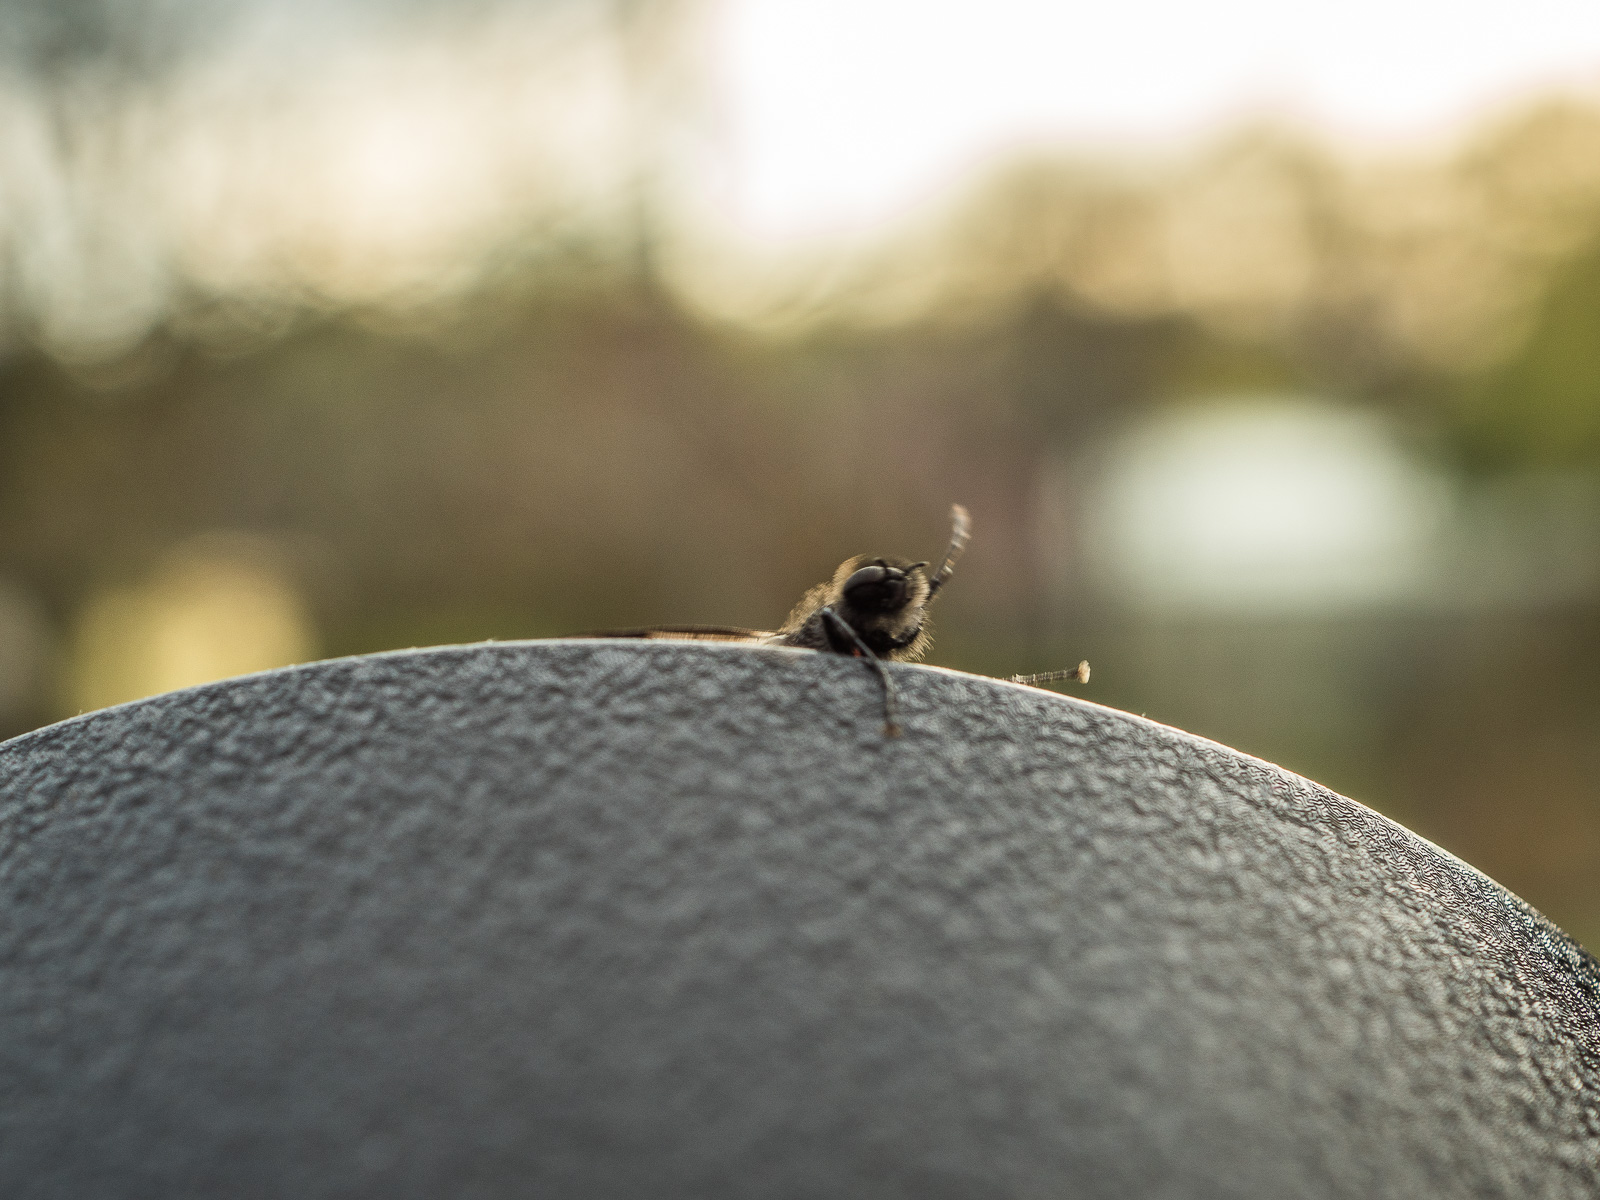 Eine schwarze Fliege oder ähnliches Insekt krabbelt vor dem Hintergrund untergehender Sonne von unten auf einen schwarzen Untergrund. Ein rechtes Bein ist oben festgekrallt, es sieht aus, als wolle es sich hochziehen